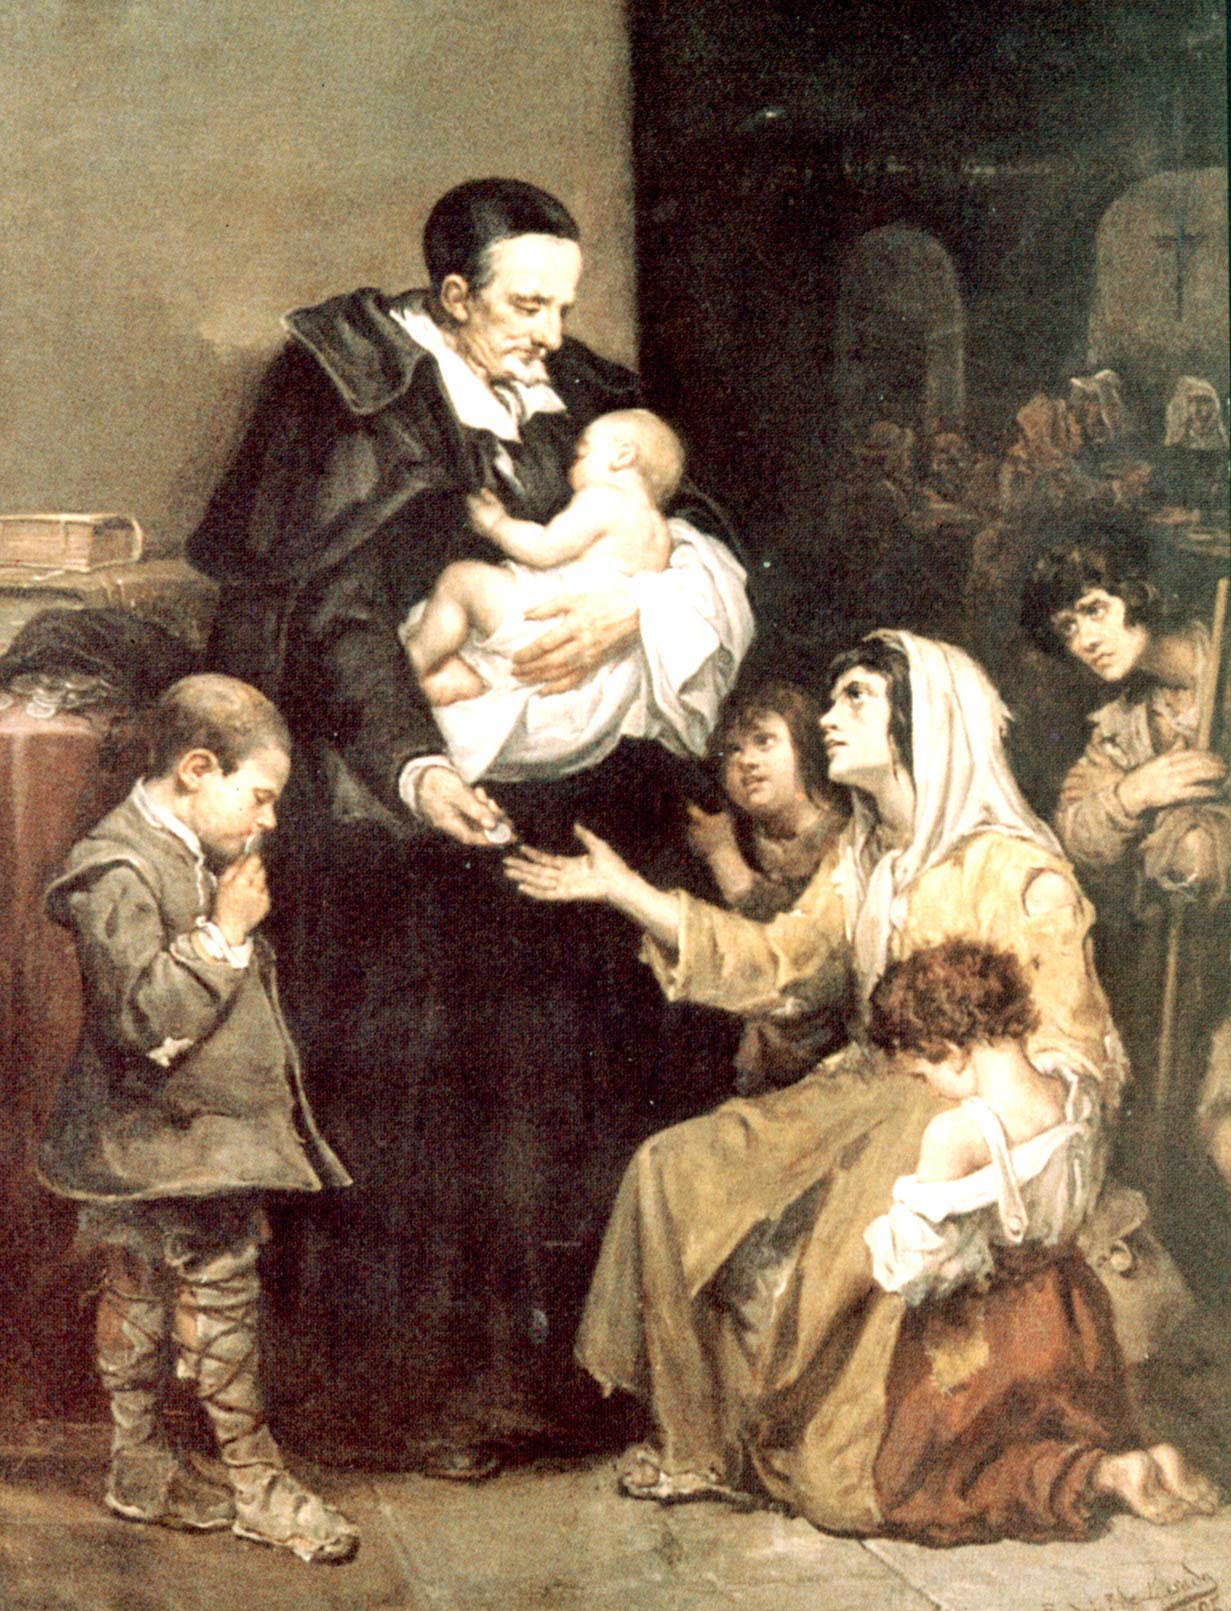 Vincent de Paul distributes alms to poor woman